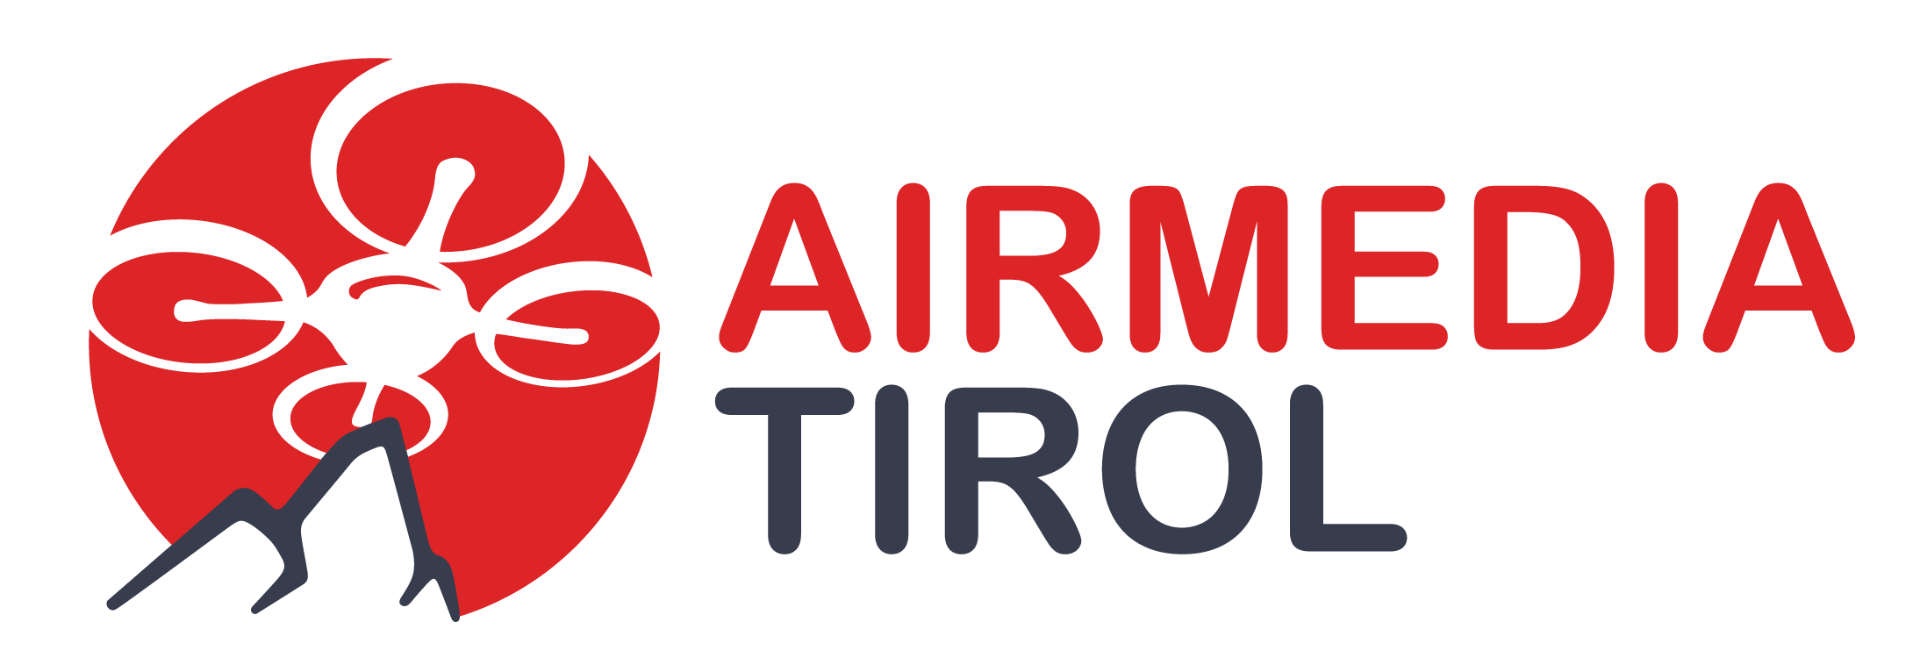 Airmedia-Tirol